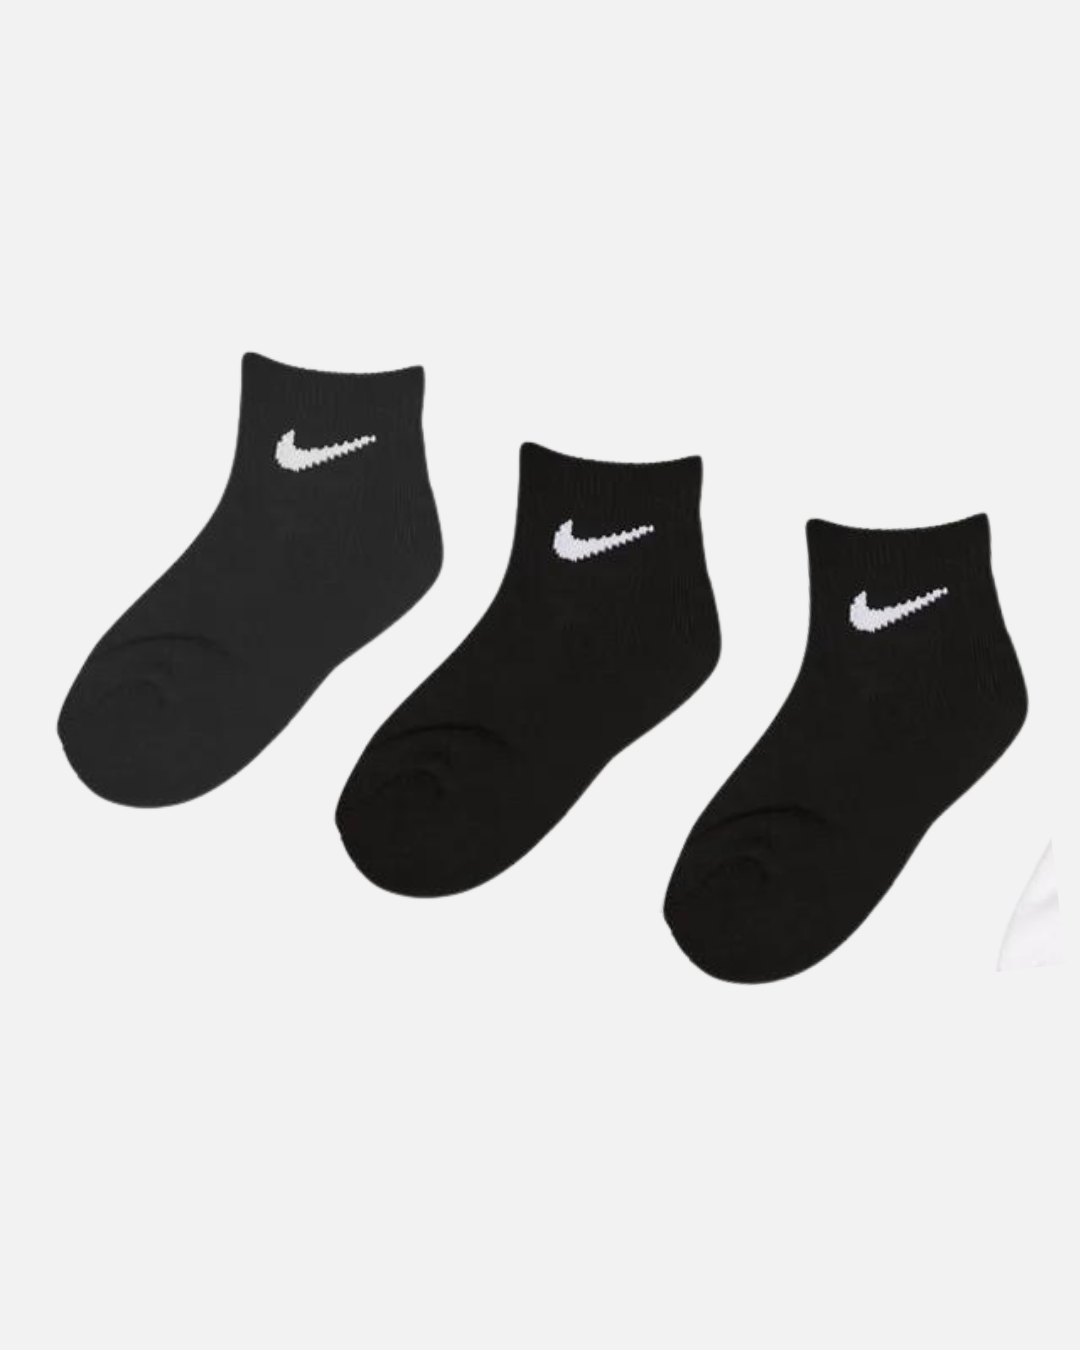 Packen Sie 3 Paar Nike Babysocken ein – Schwarz